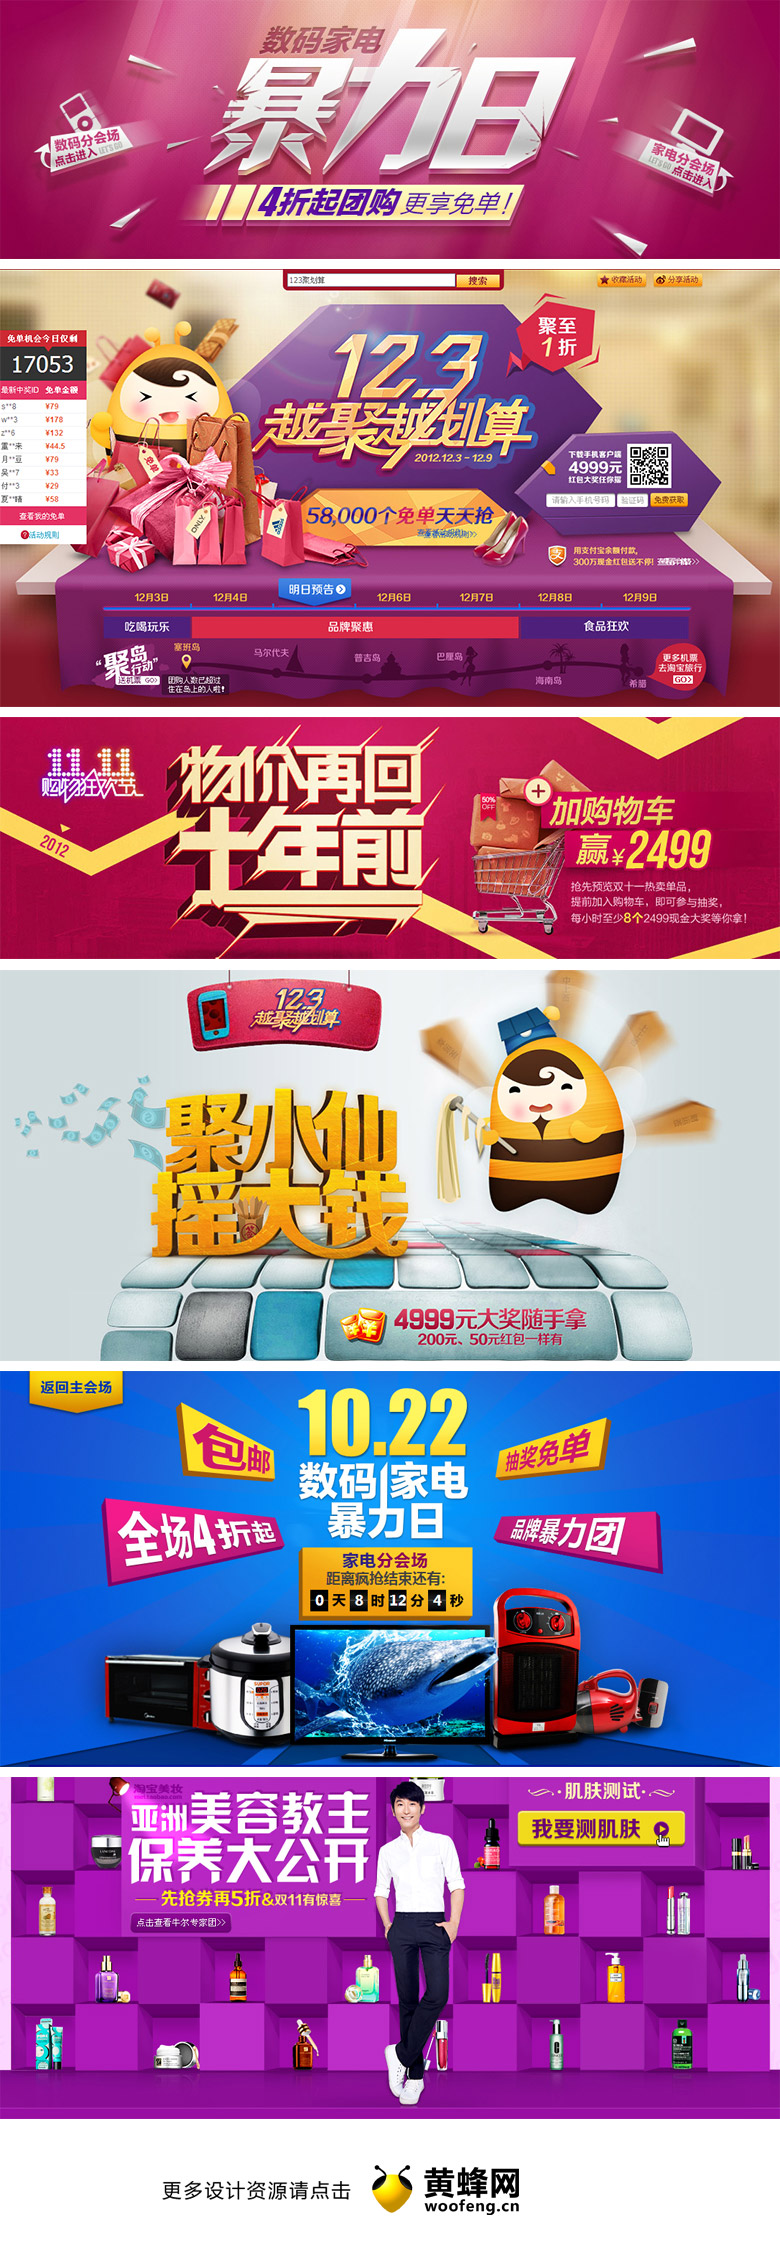 天猫购物网站专题页面头图设计欣赏0409，来源自黄蜂网https://woofeng.cn/advertising/